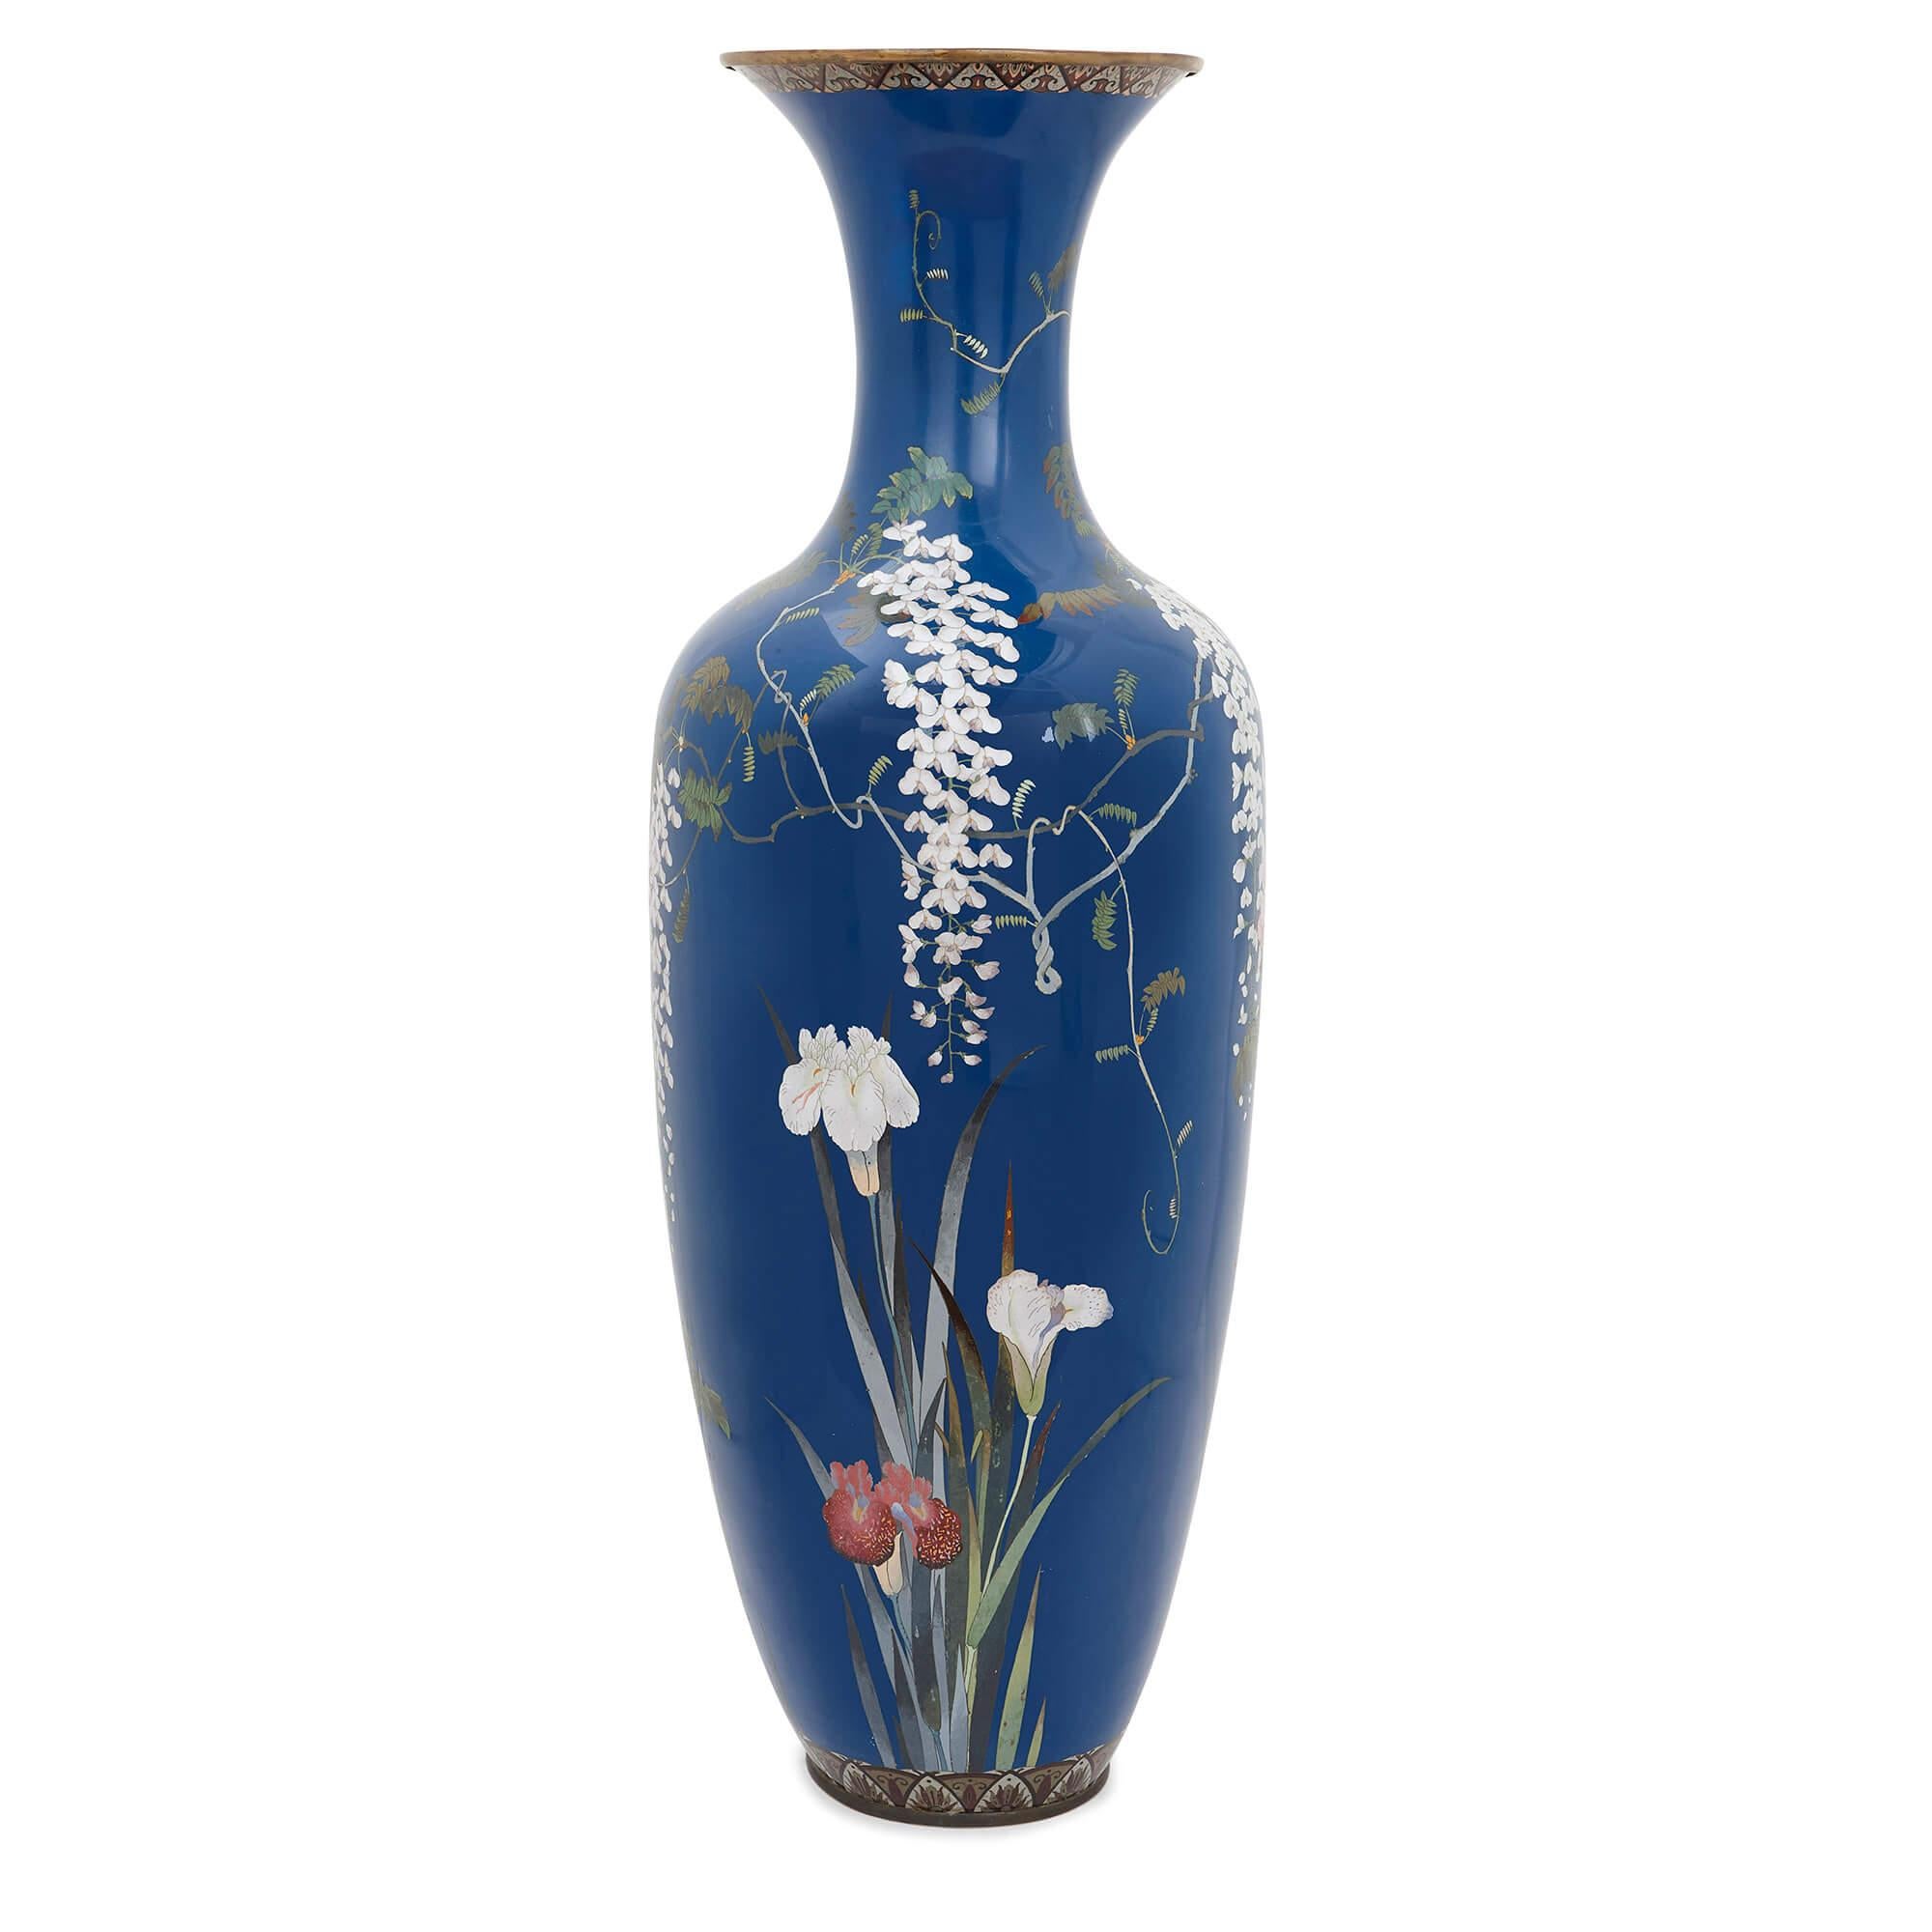 Diese atemberaubende Vase aus der Meiji-Zeit ist ein wunderbares Beispiel für die Qualität der Handwerkskunst in der japanischen Meiji-Zeit Ende des 19. Jahrhunderts. Die Meiji-Ära ist berühmt dafür, dass sie die Zeit war, in der Japan begann, offen